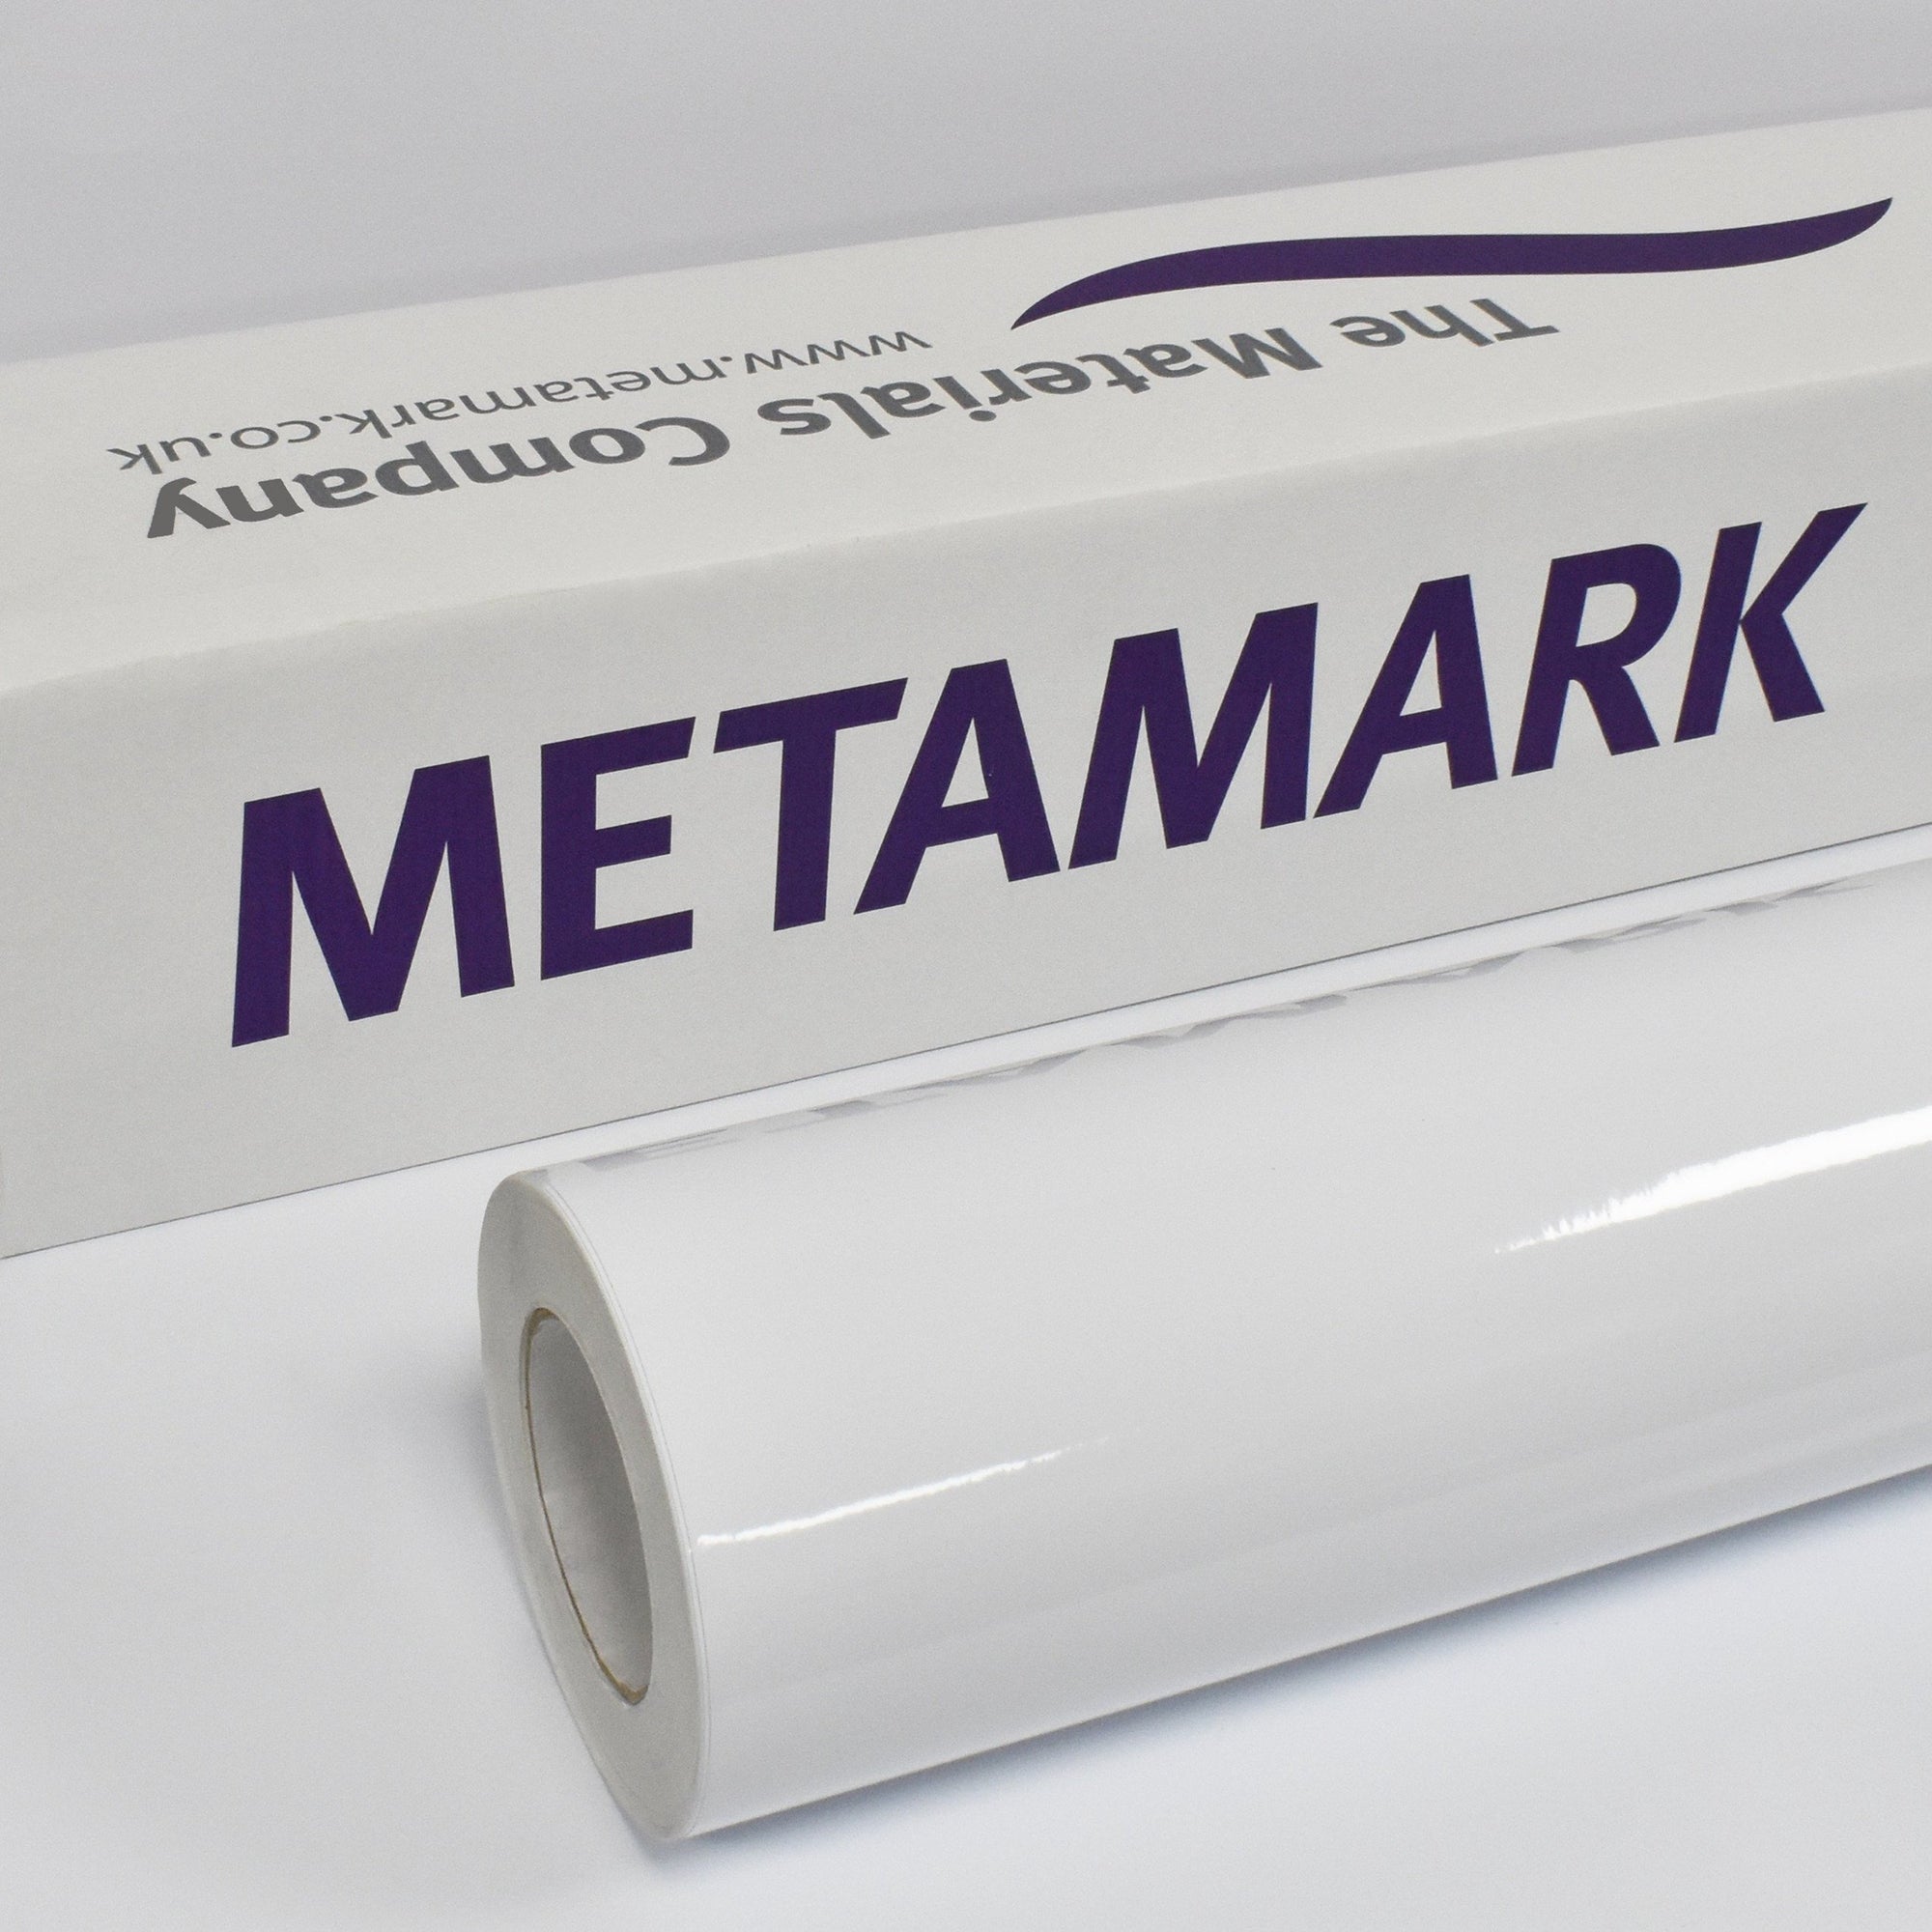 Metamark MetaGuard 700 Laminate